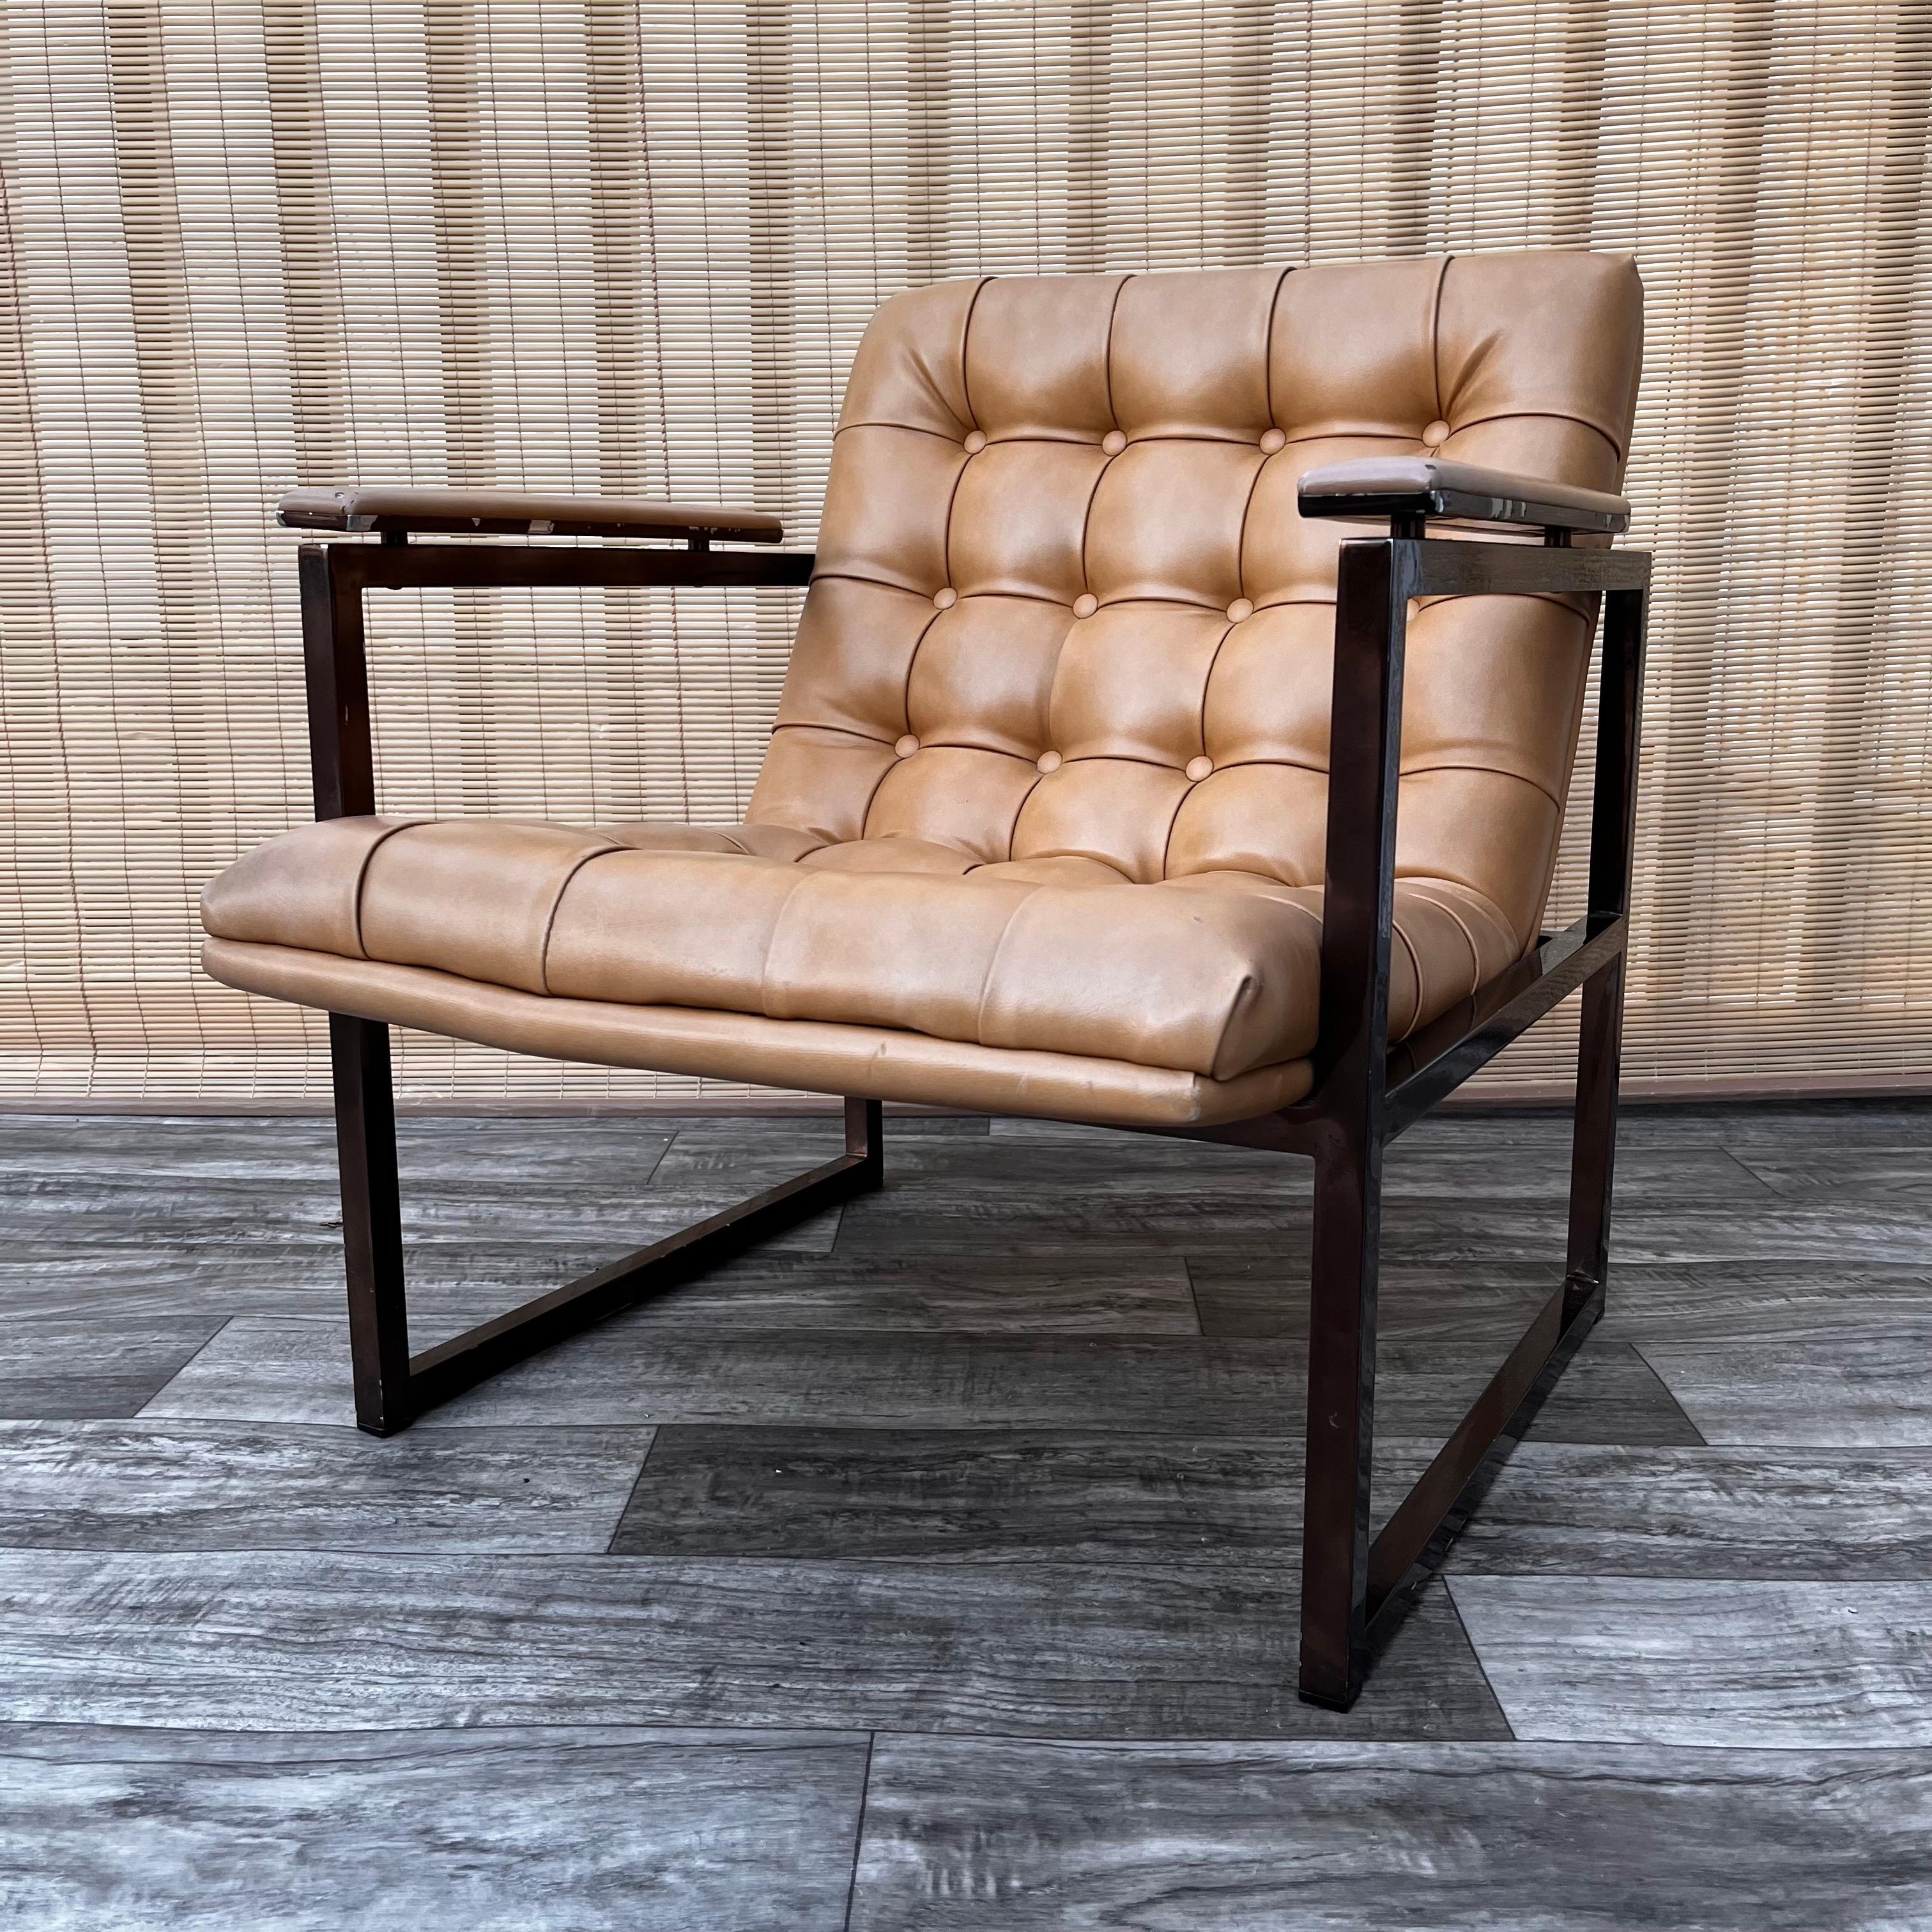 vintage metal lounge chair